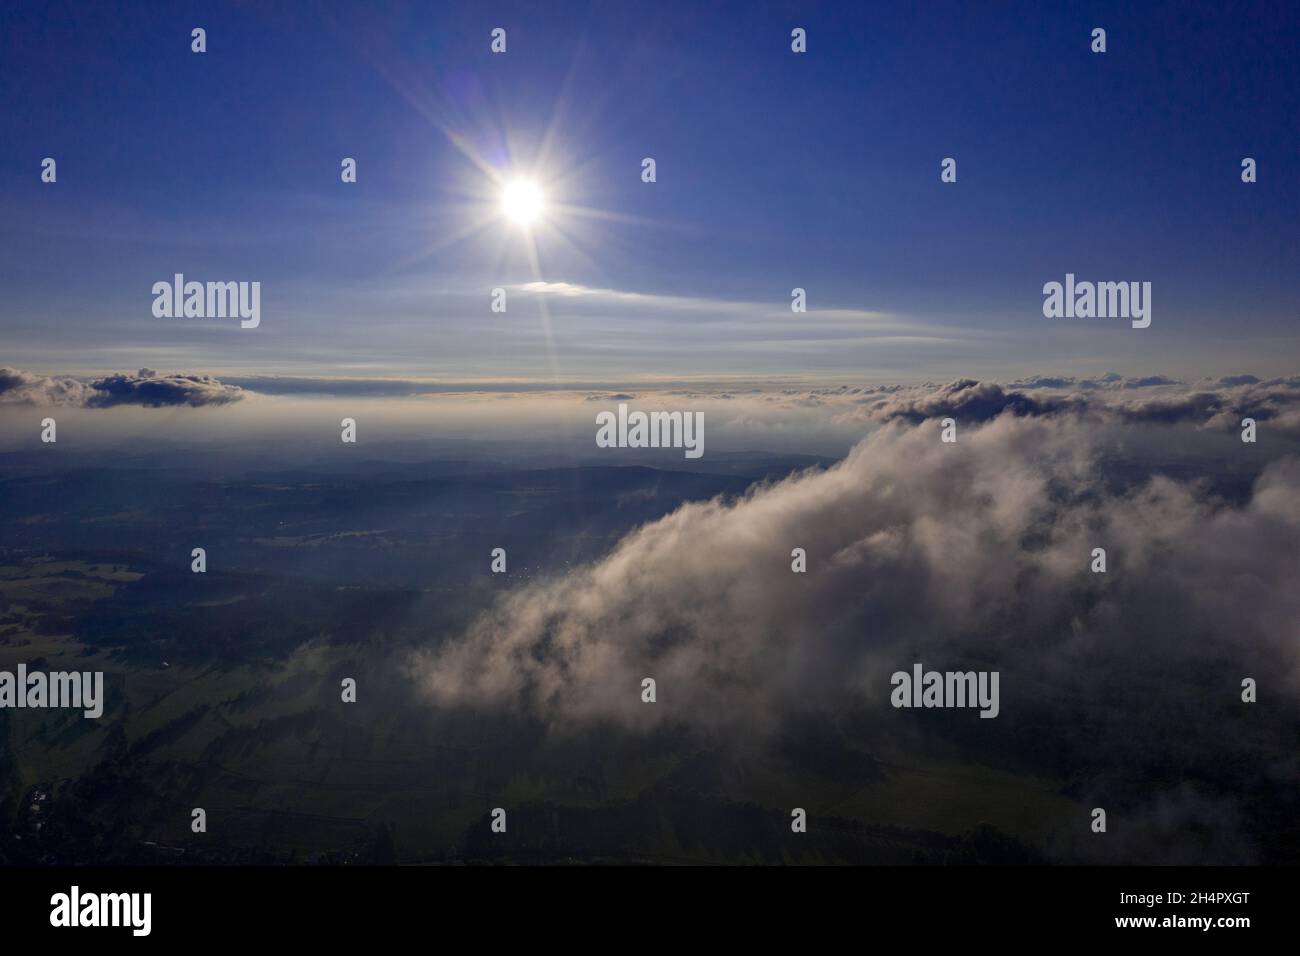 Wolken von oben gefilmt / Clouds with Drone from above Stock Photo